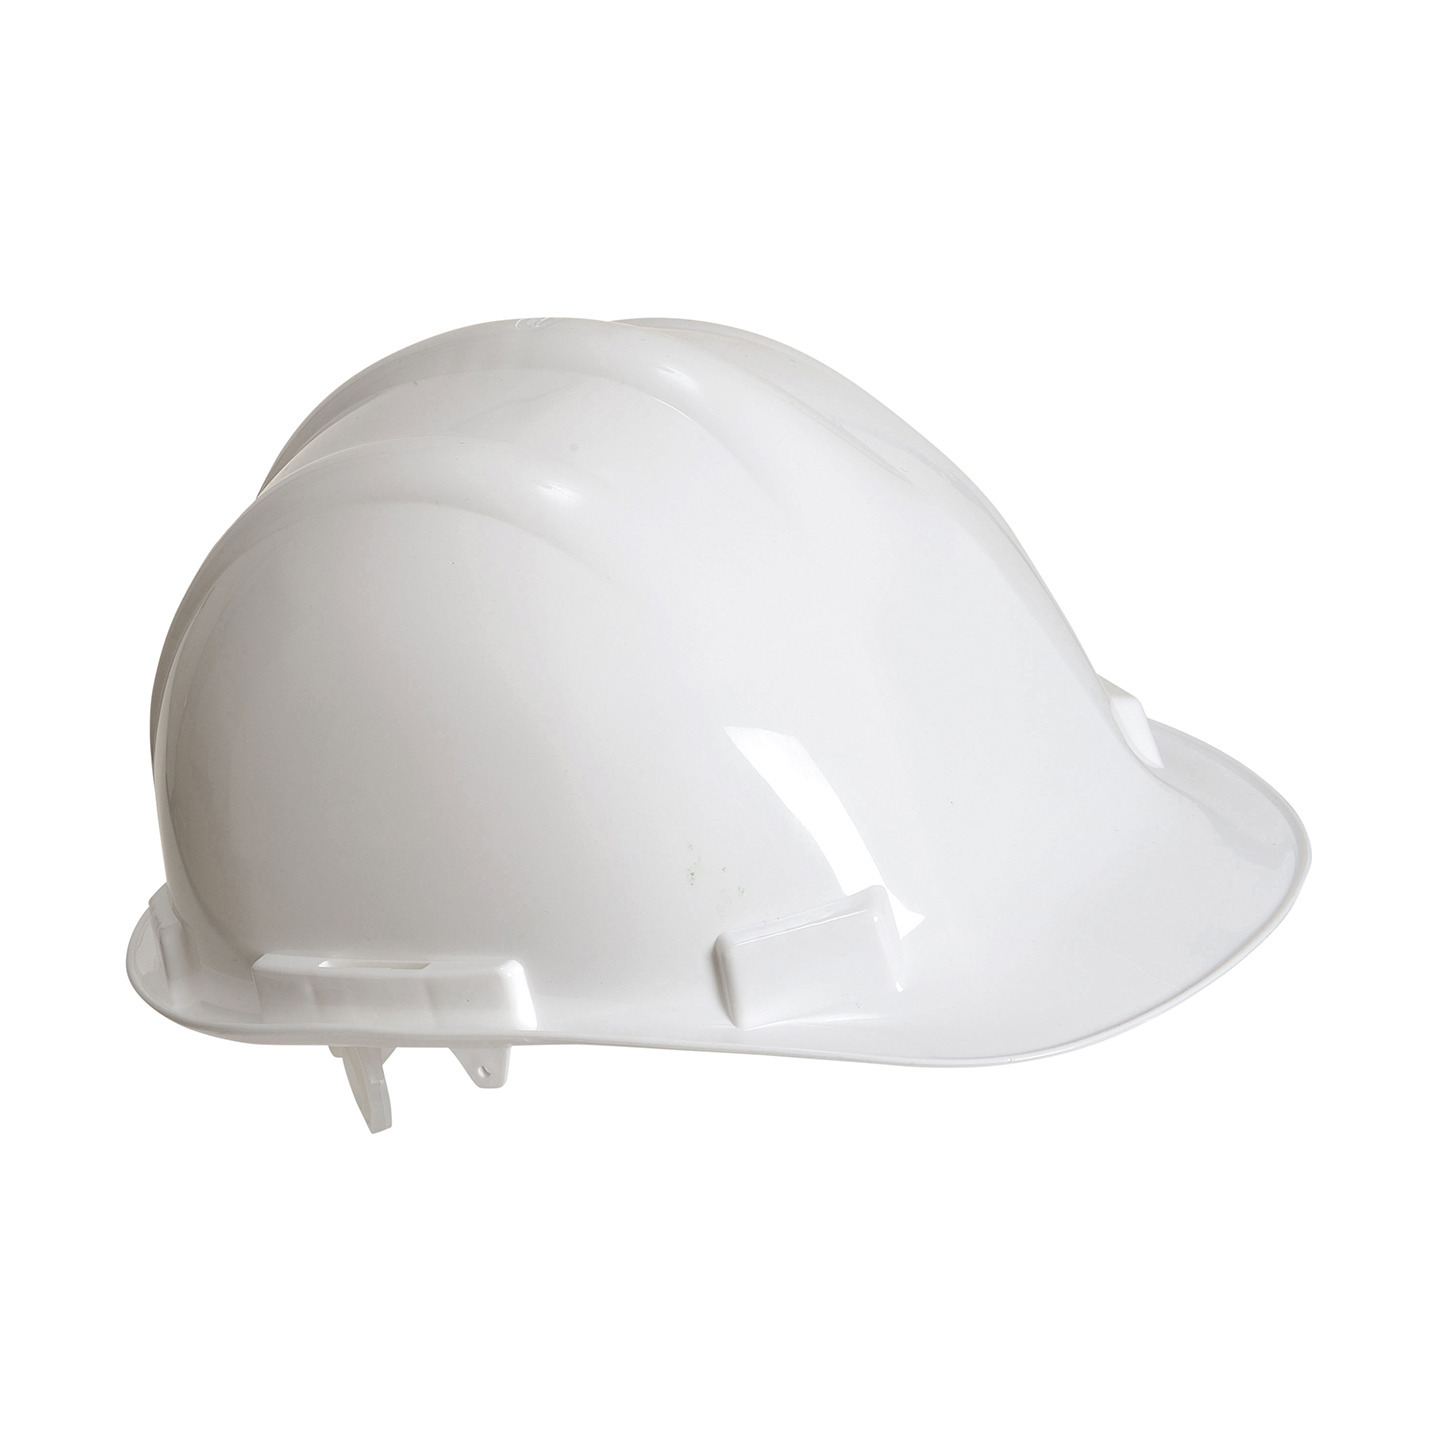 Set van 2x stuks veiligheidshelmen-bouwhelmen hoofdbescherming wit verstelbaar 55-62 cm